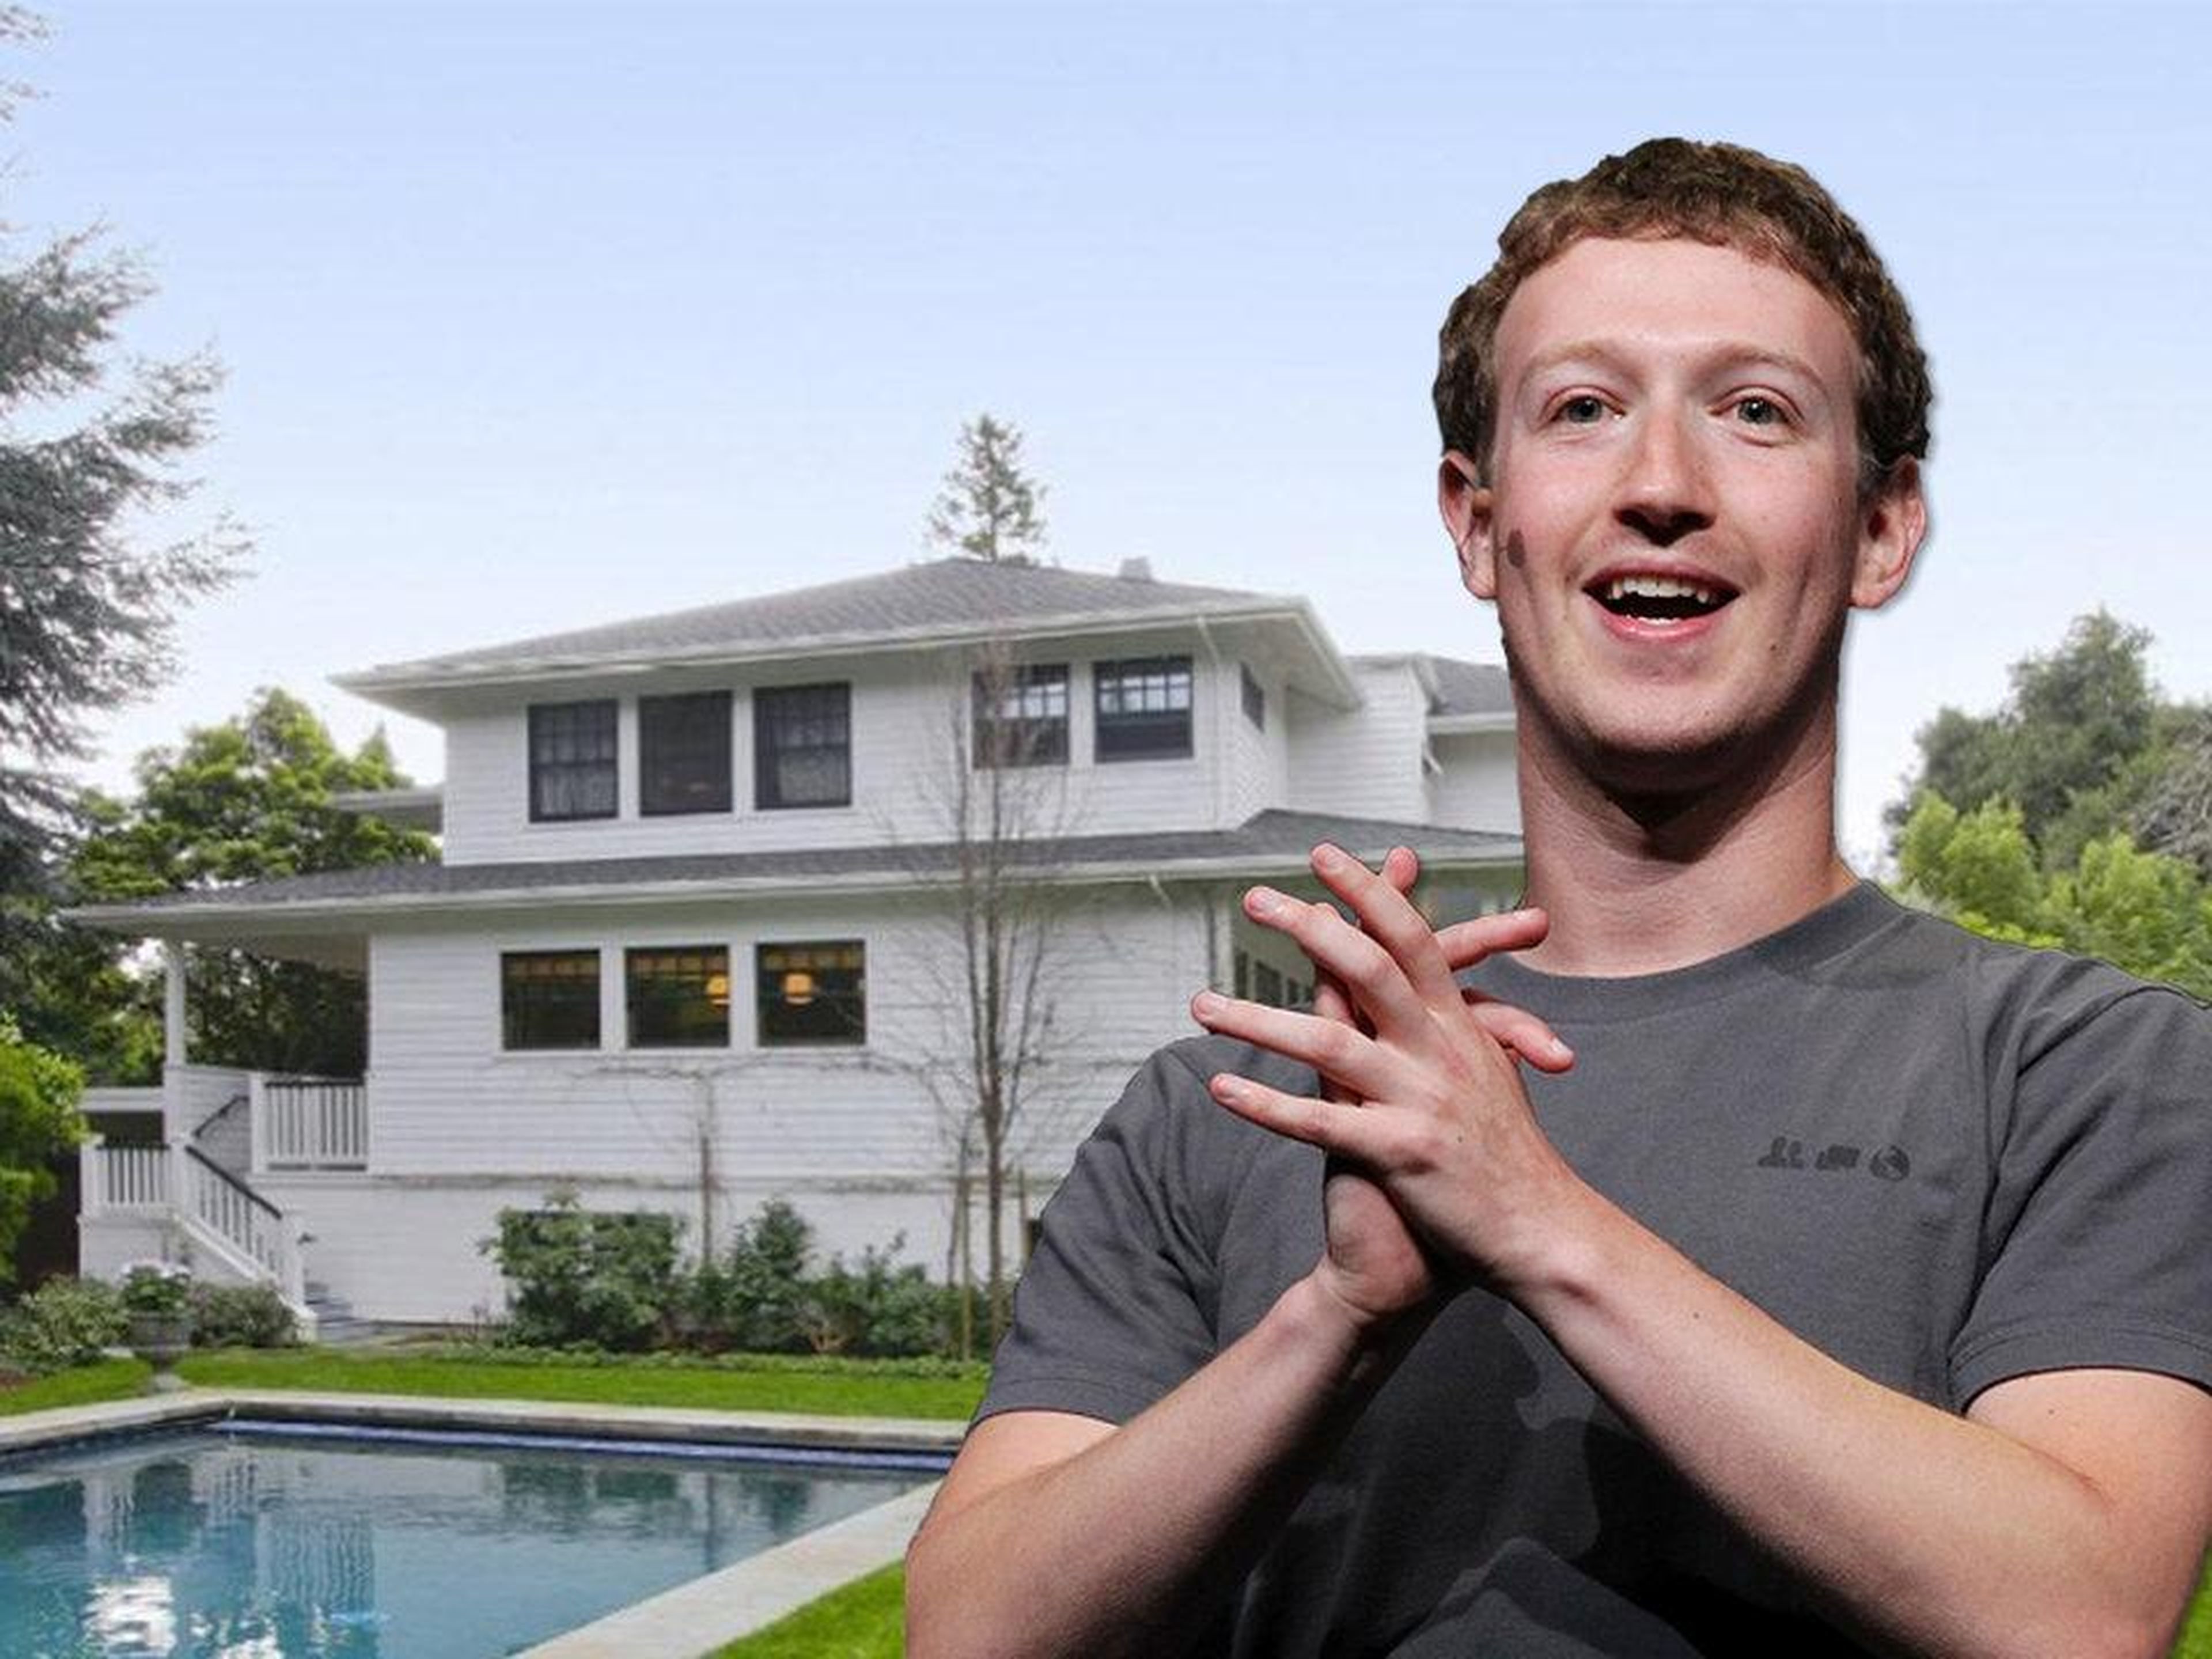 [RE] El fundador de Facebook, Mark Zuckerberg, compró su casa de 522 metros cuadrados en Palo Alto por 7 millones de dólares en 2011.